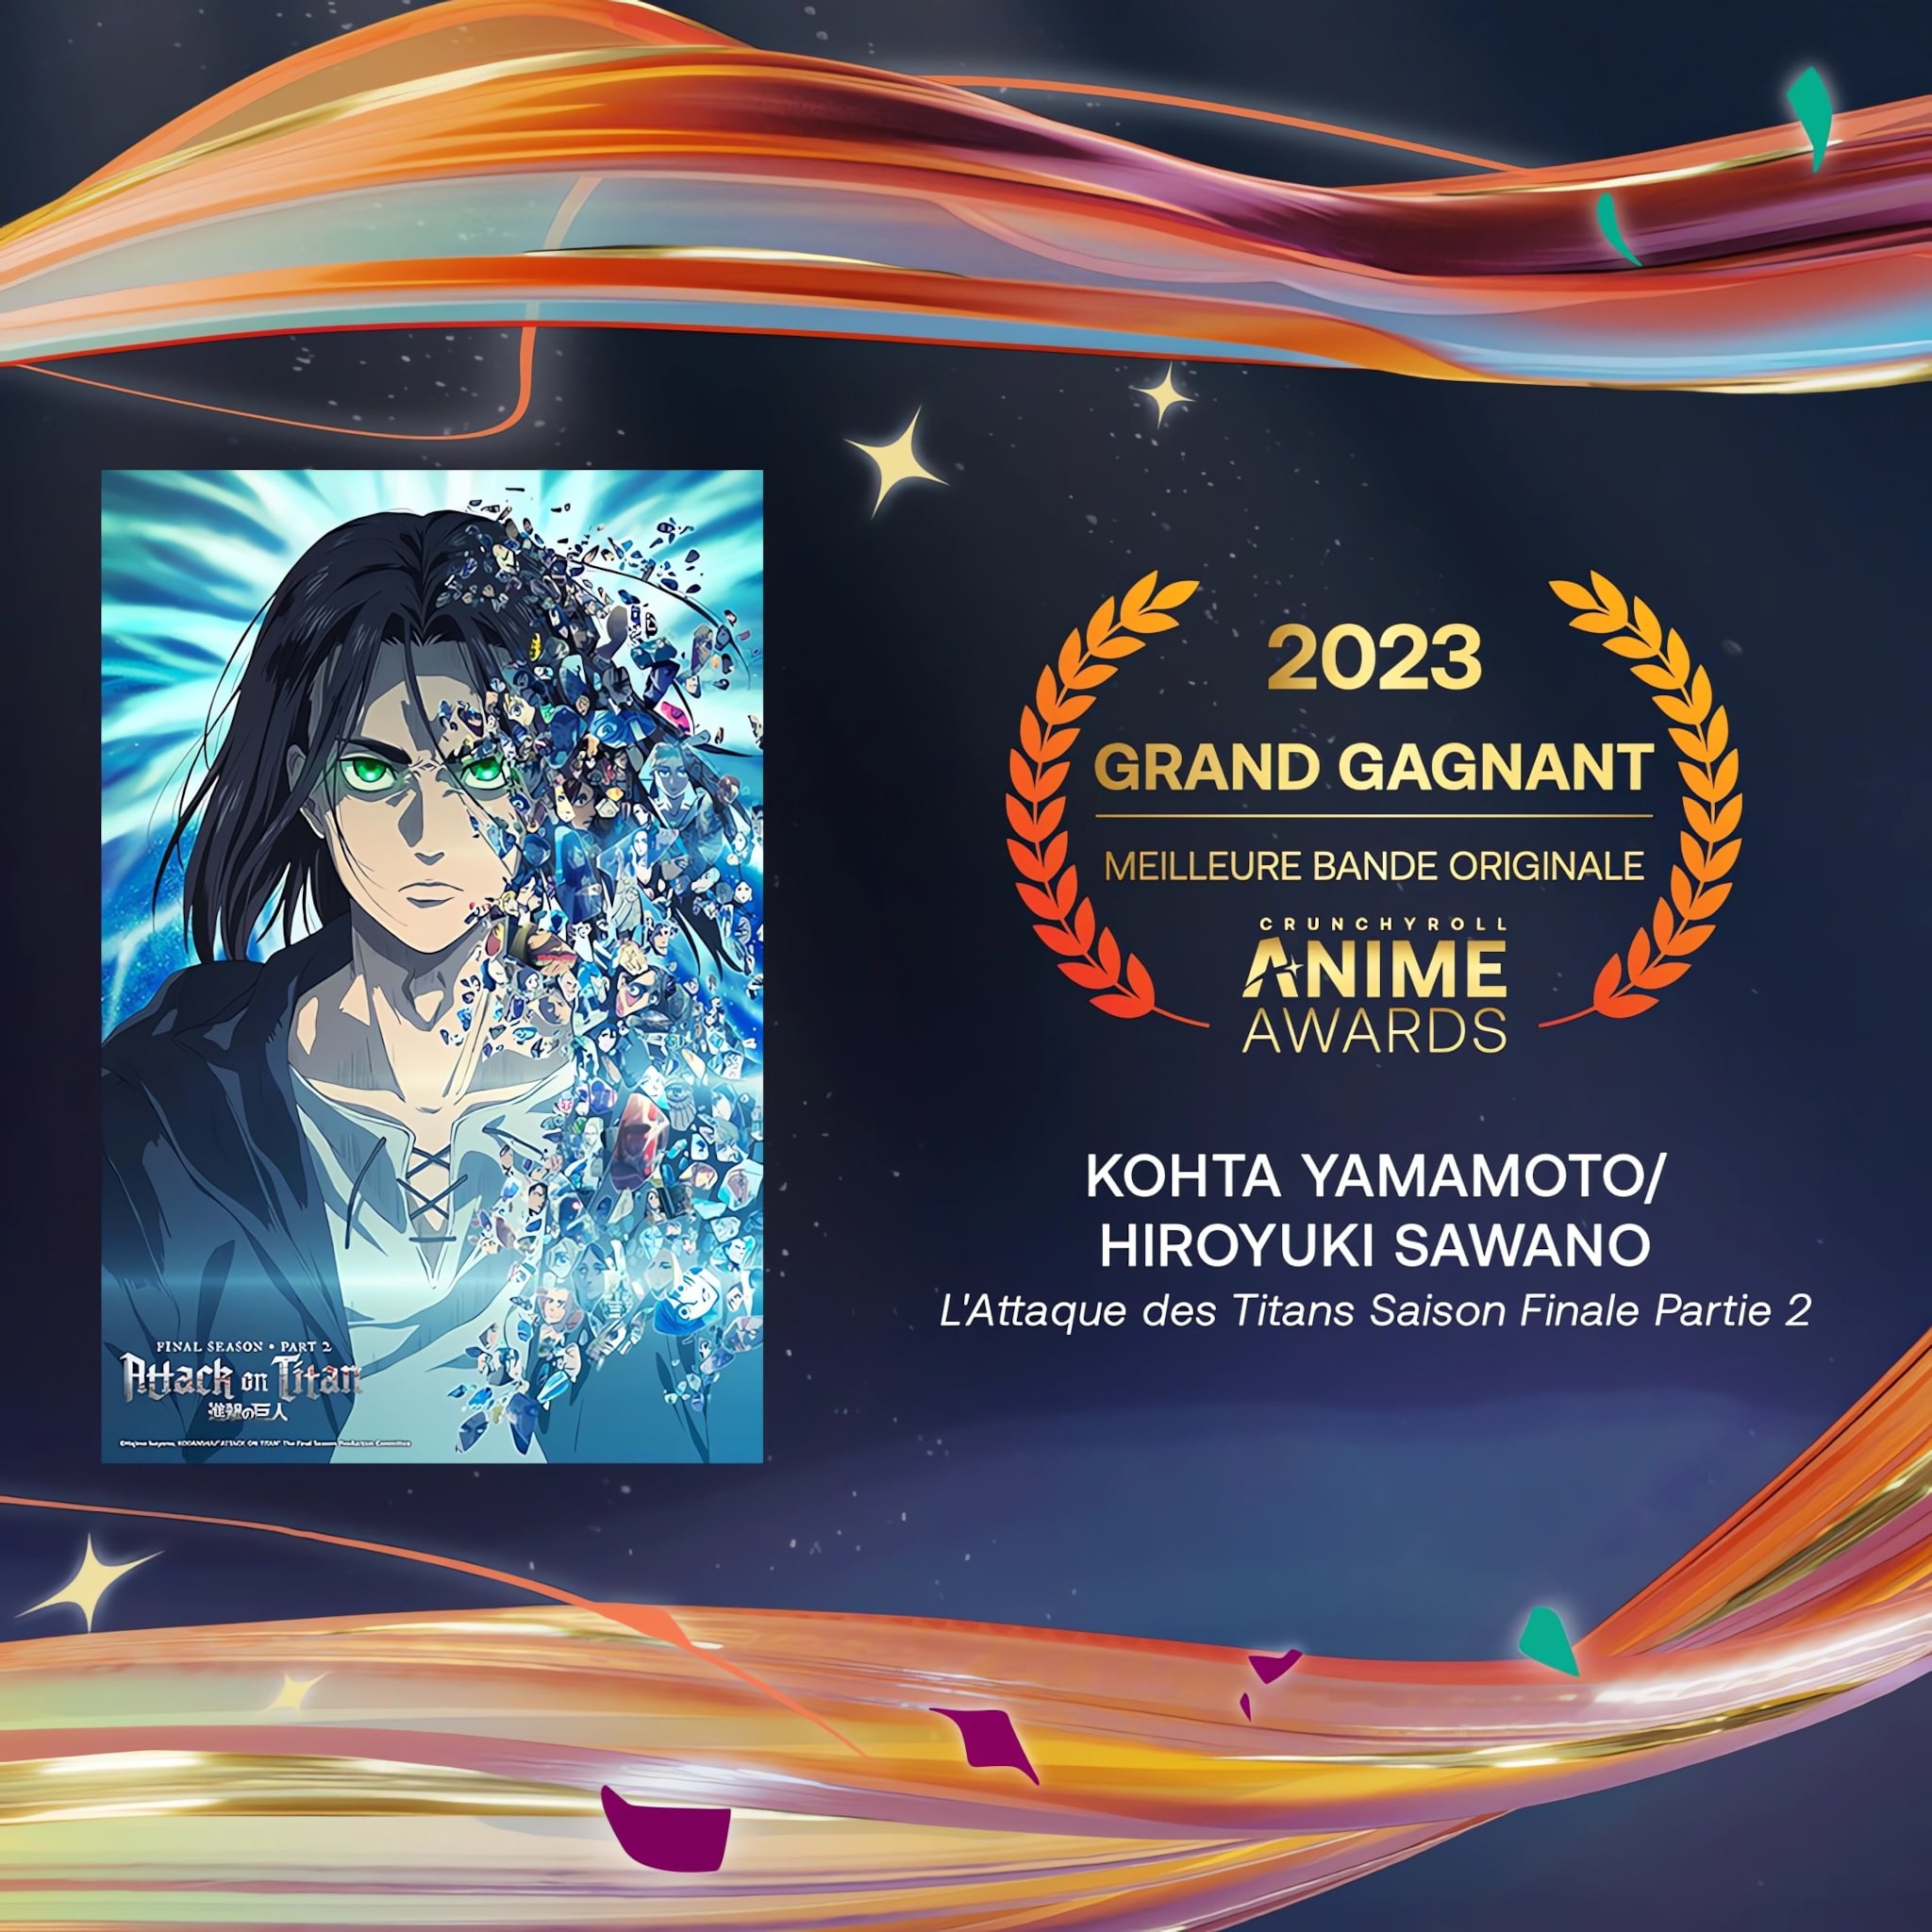 Prix de la meilleure bande originale pour les Crunchyroll Anime Awards 2023